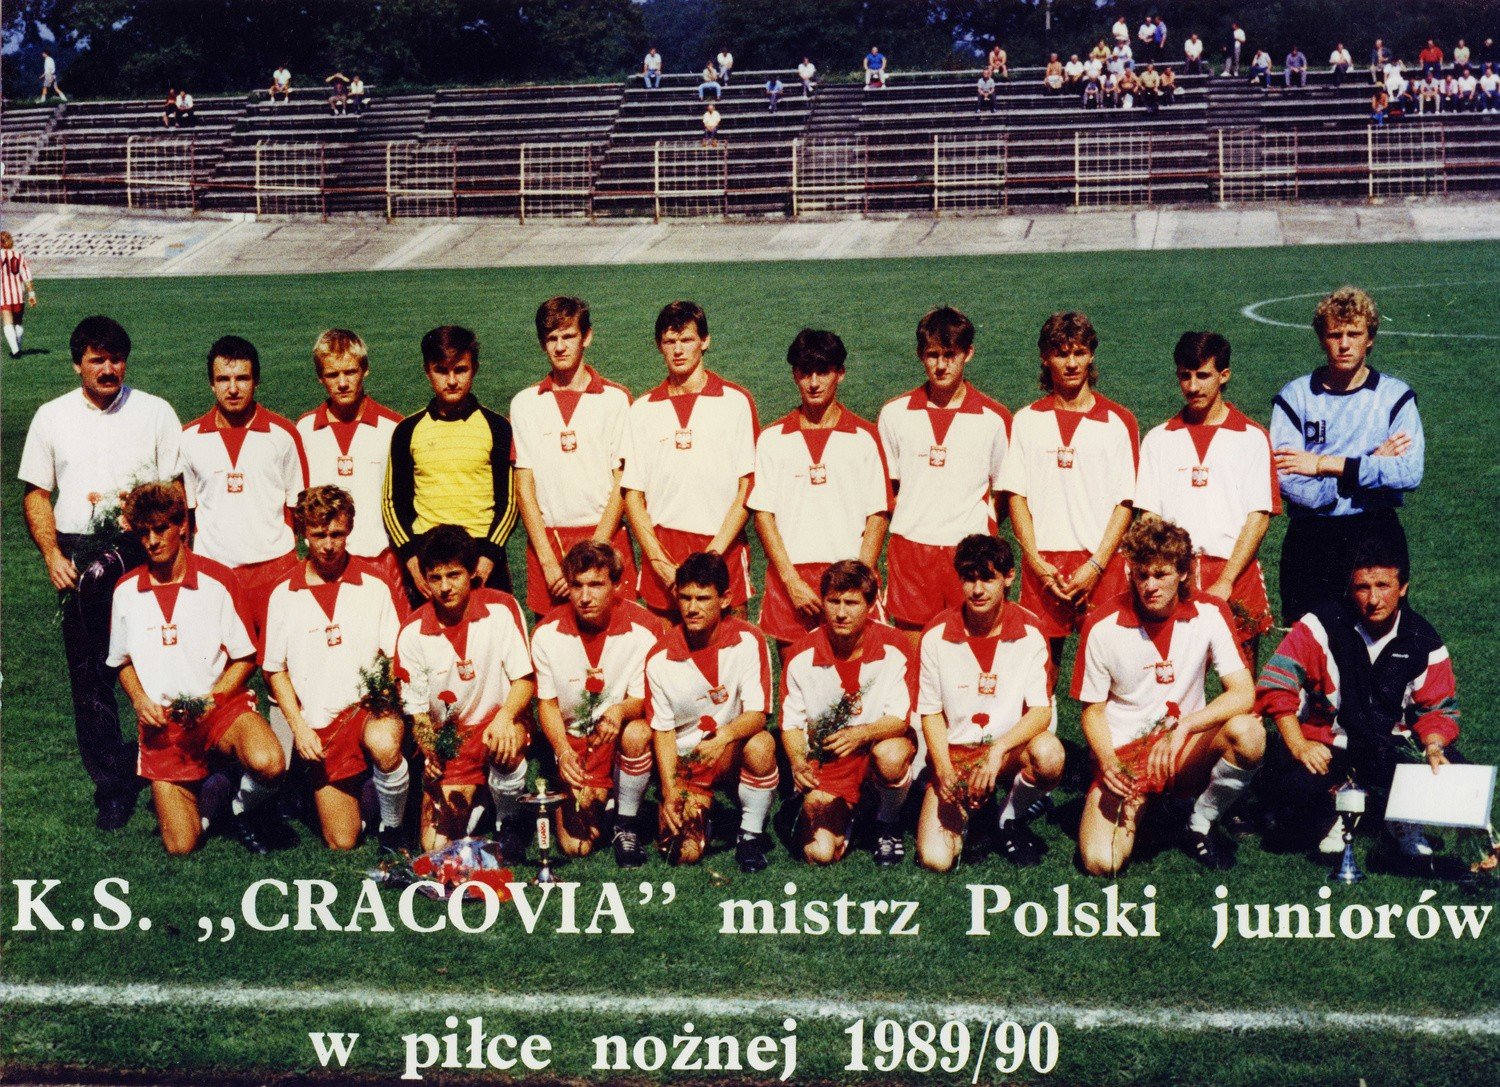 Mistrzowie Polski juniorów z 1990 i 1991 r. z Cracovii znów spotkają się na  boisku | Dziennik Polski